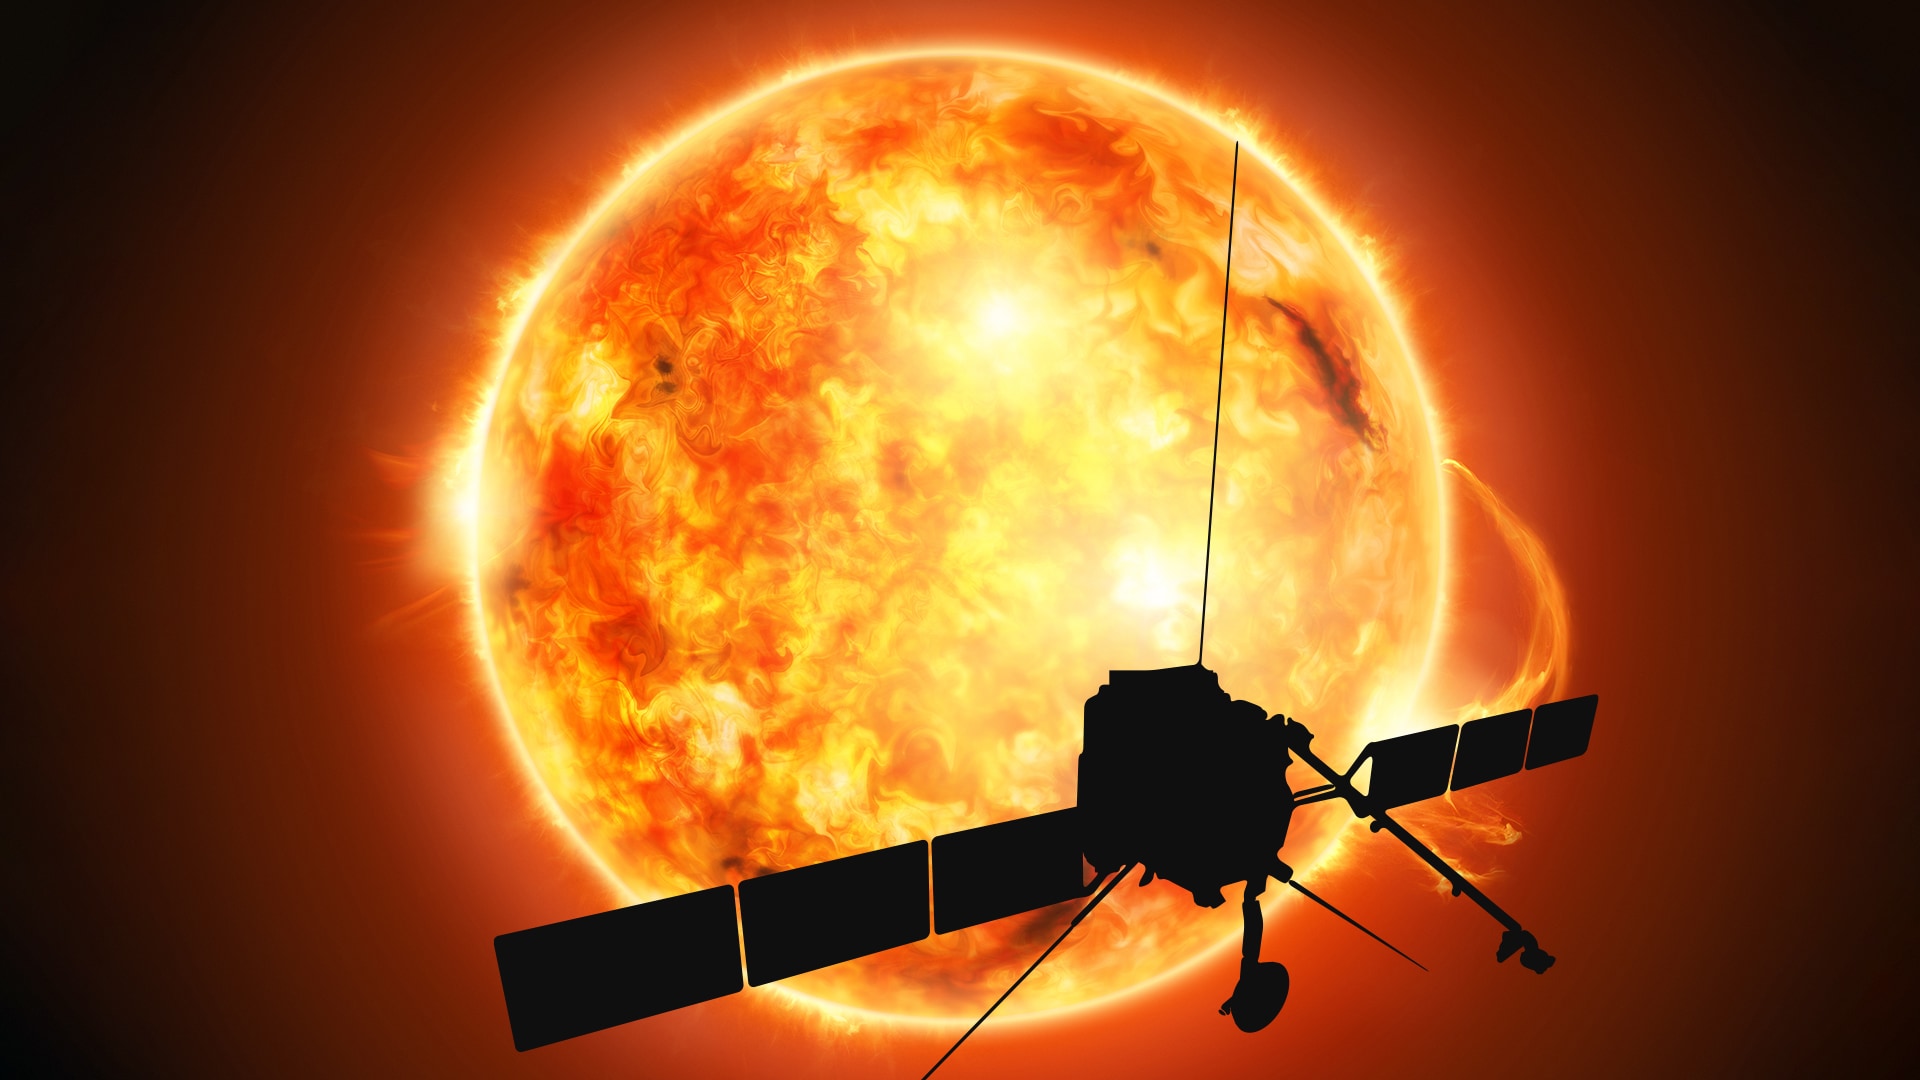 Forschungssatellit Solar Orbiter und die Reise zur Sonne